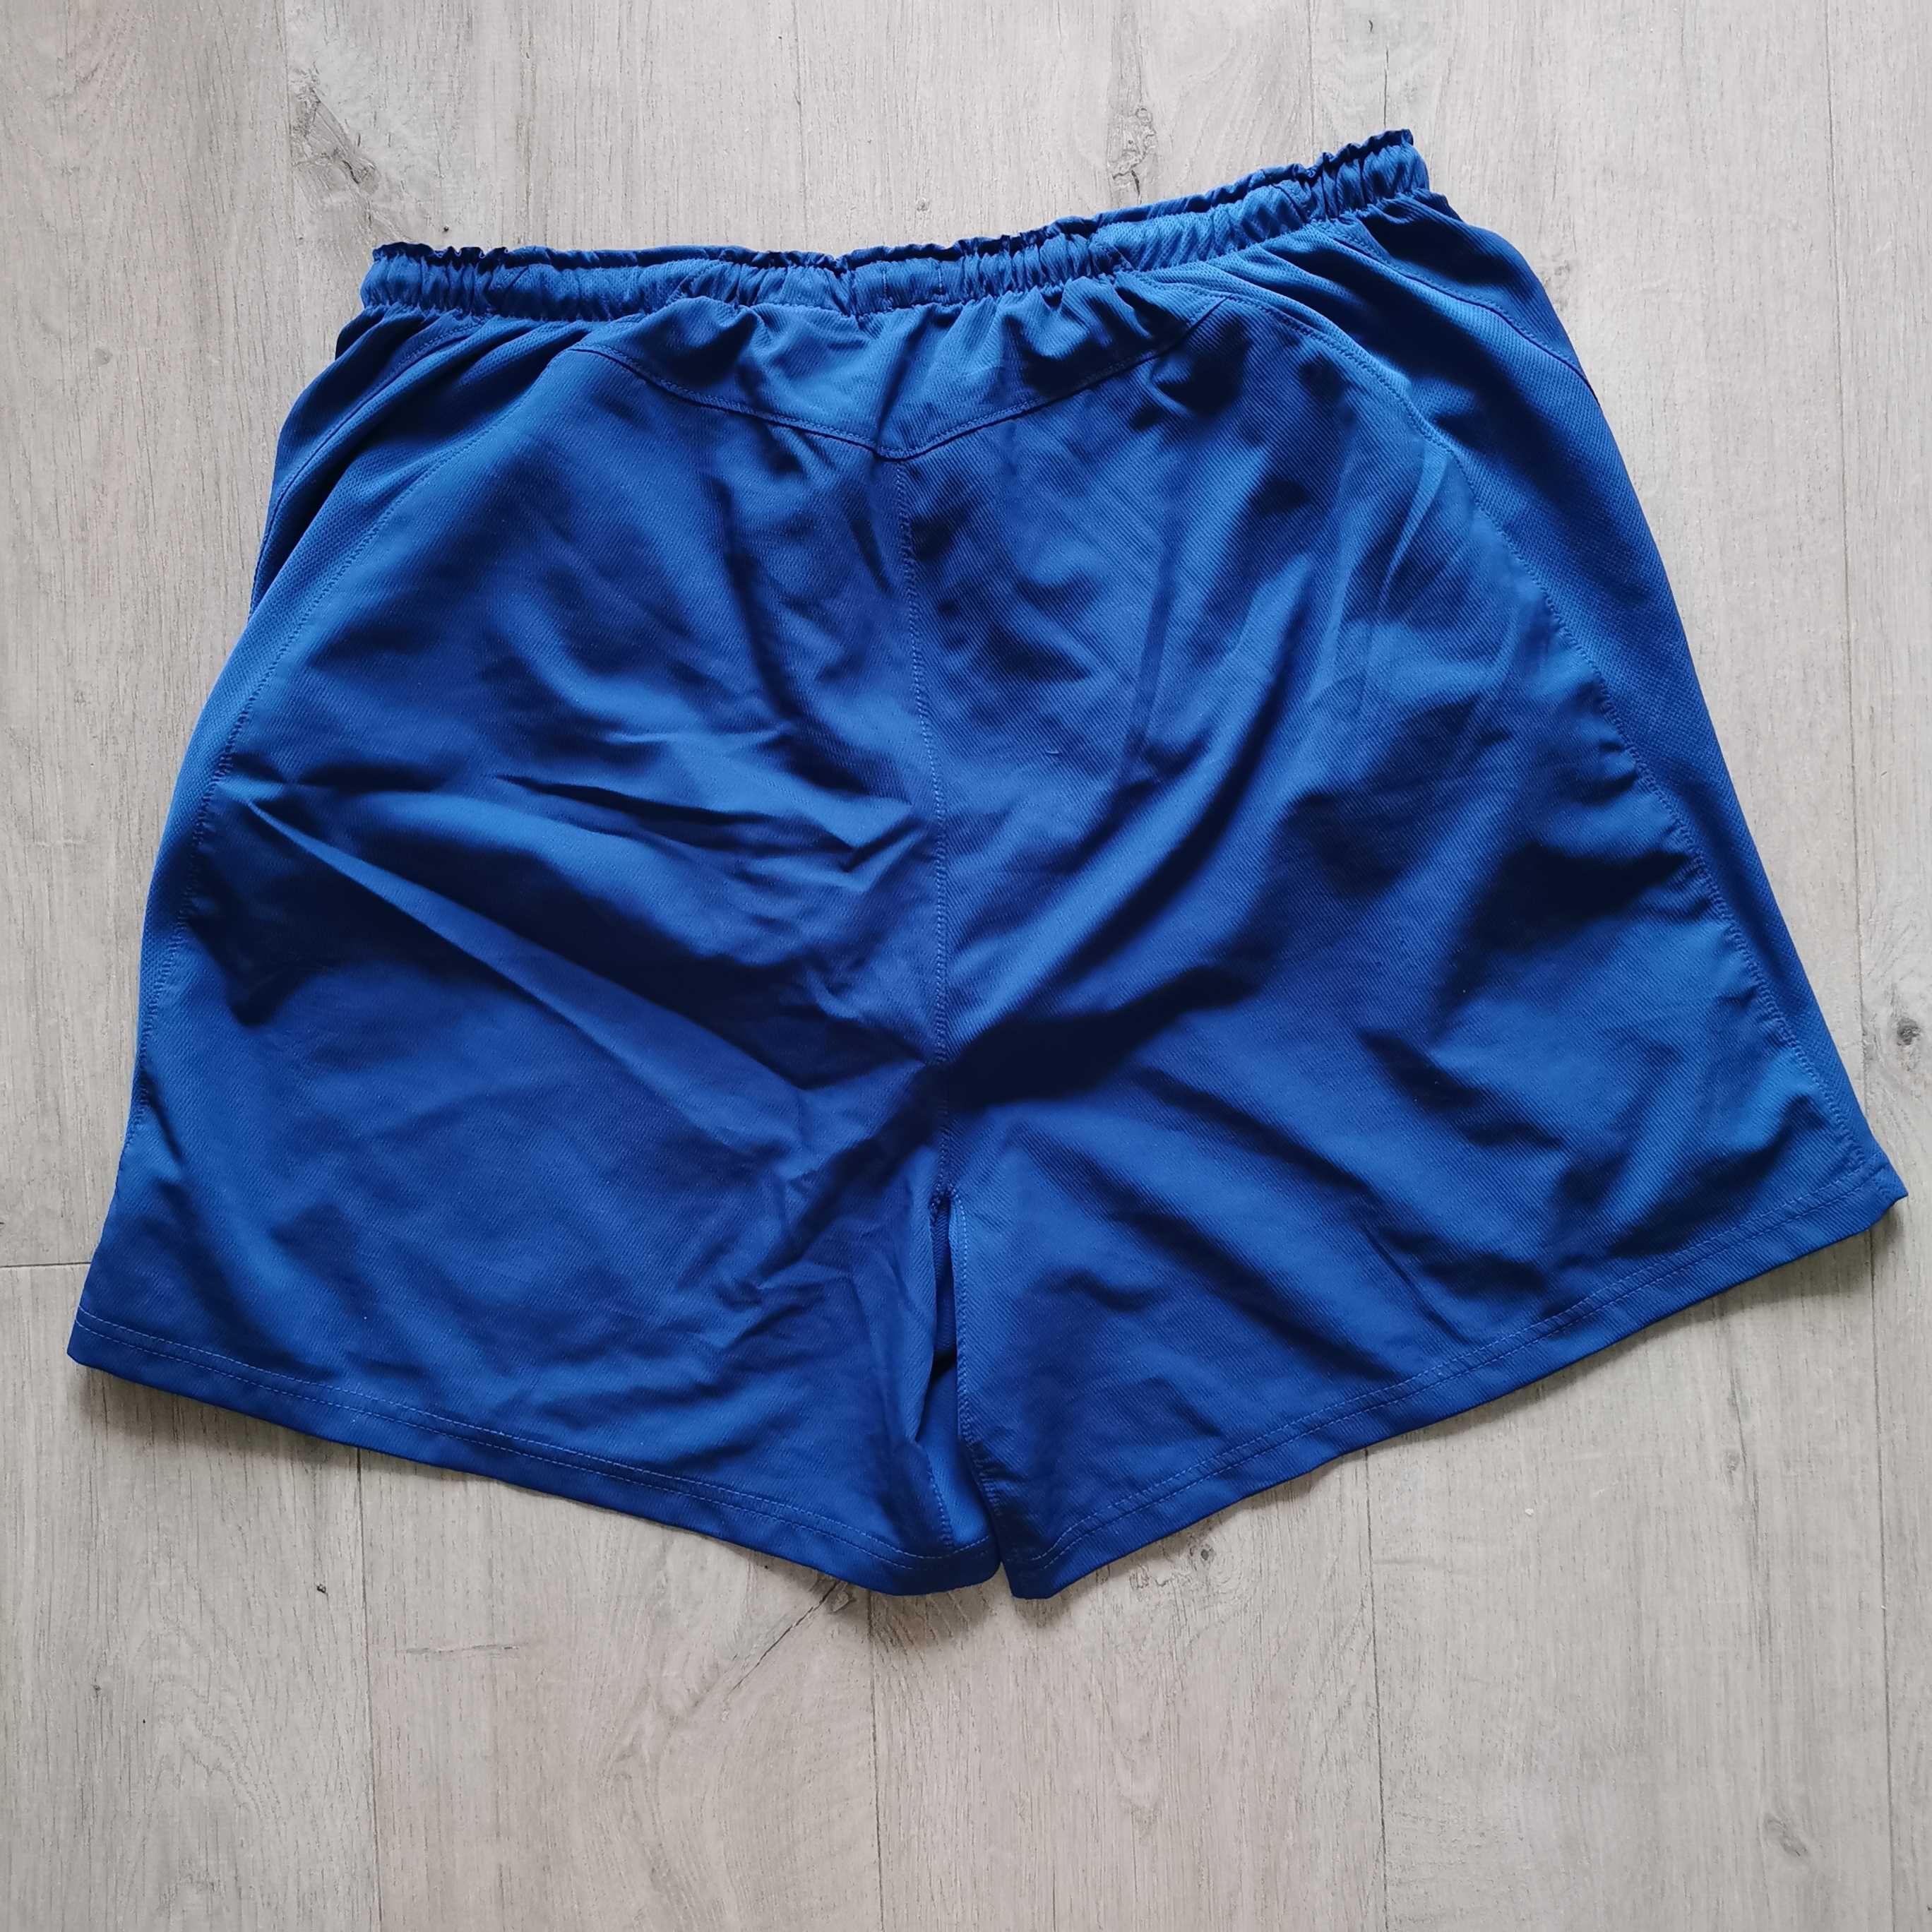 Spodenki Nike FC Barcelona 2008/09 Home shorts (domowe) rozmiar XL